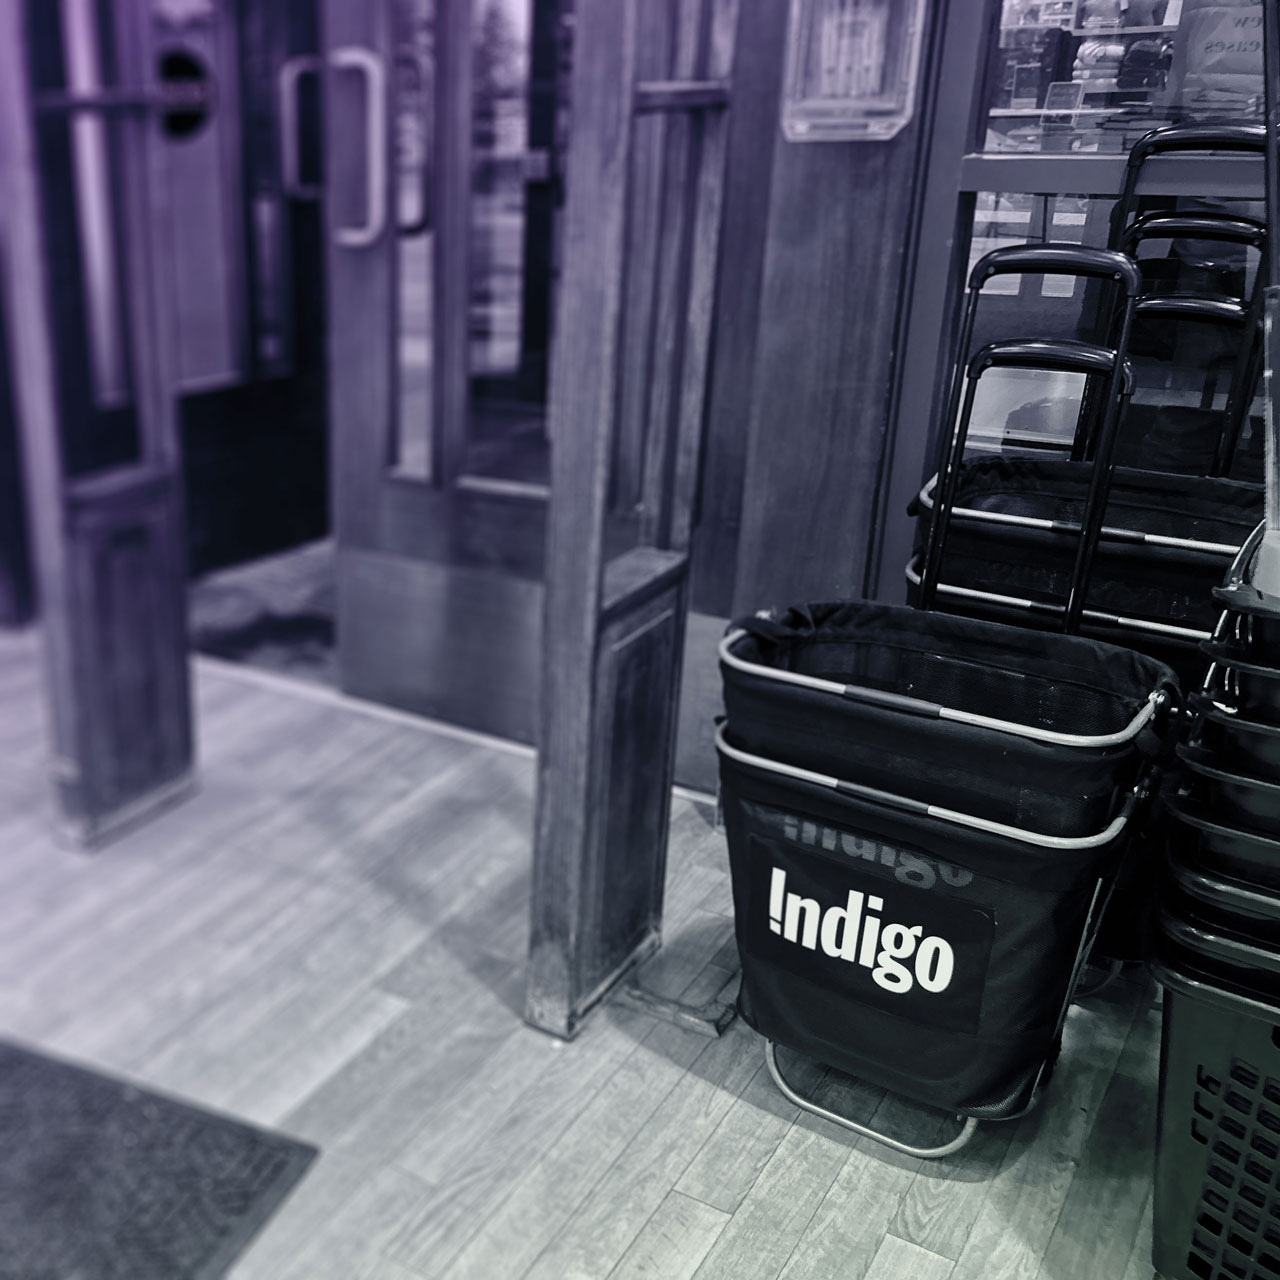 Indigo Shopping Cart in stores